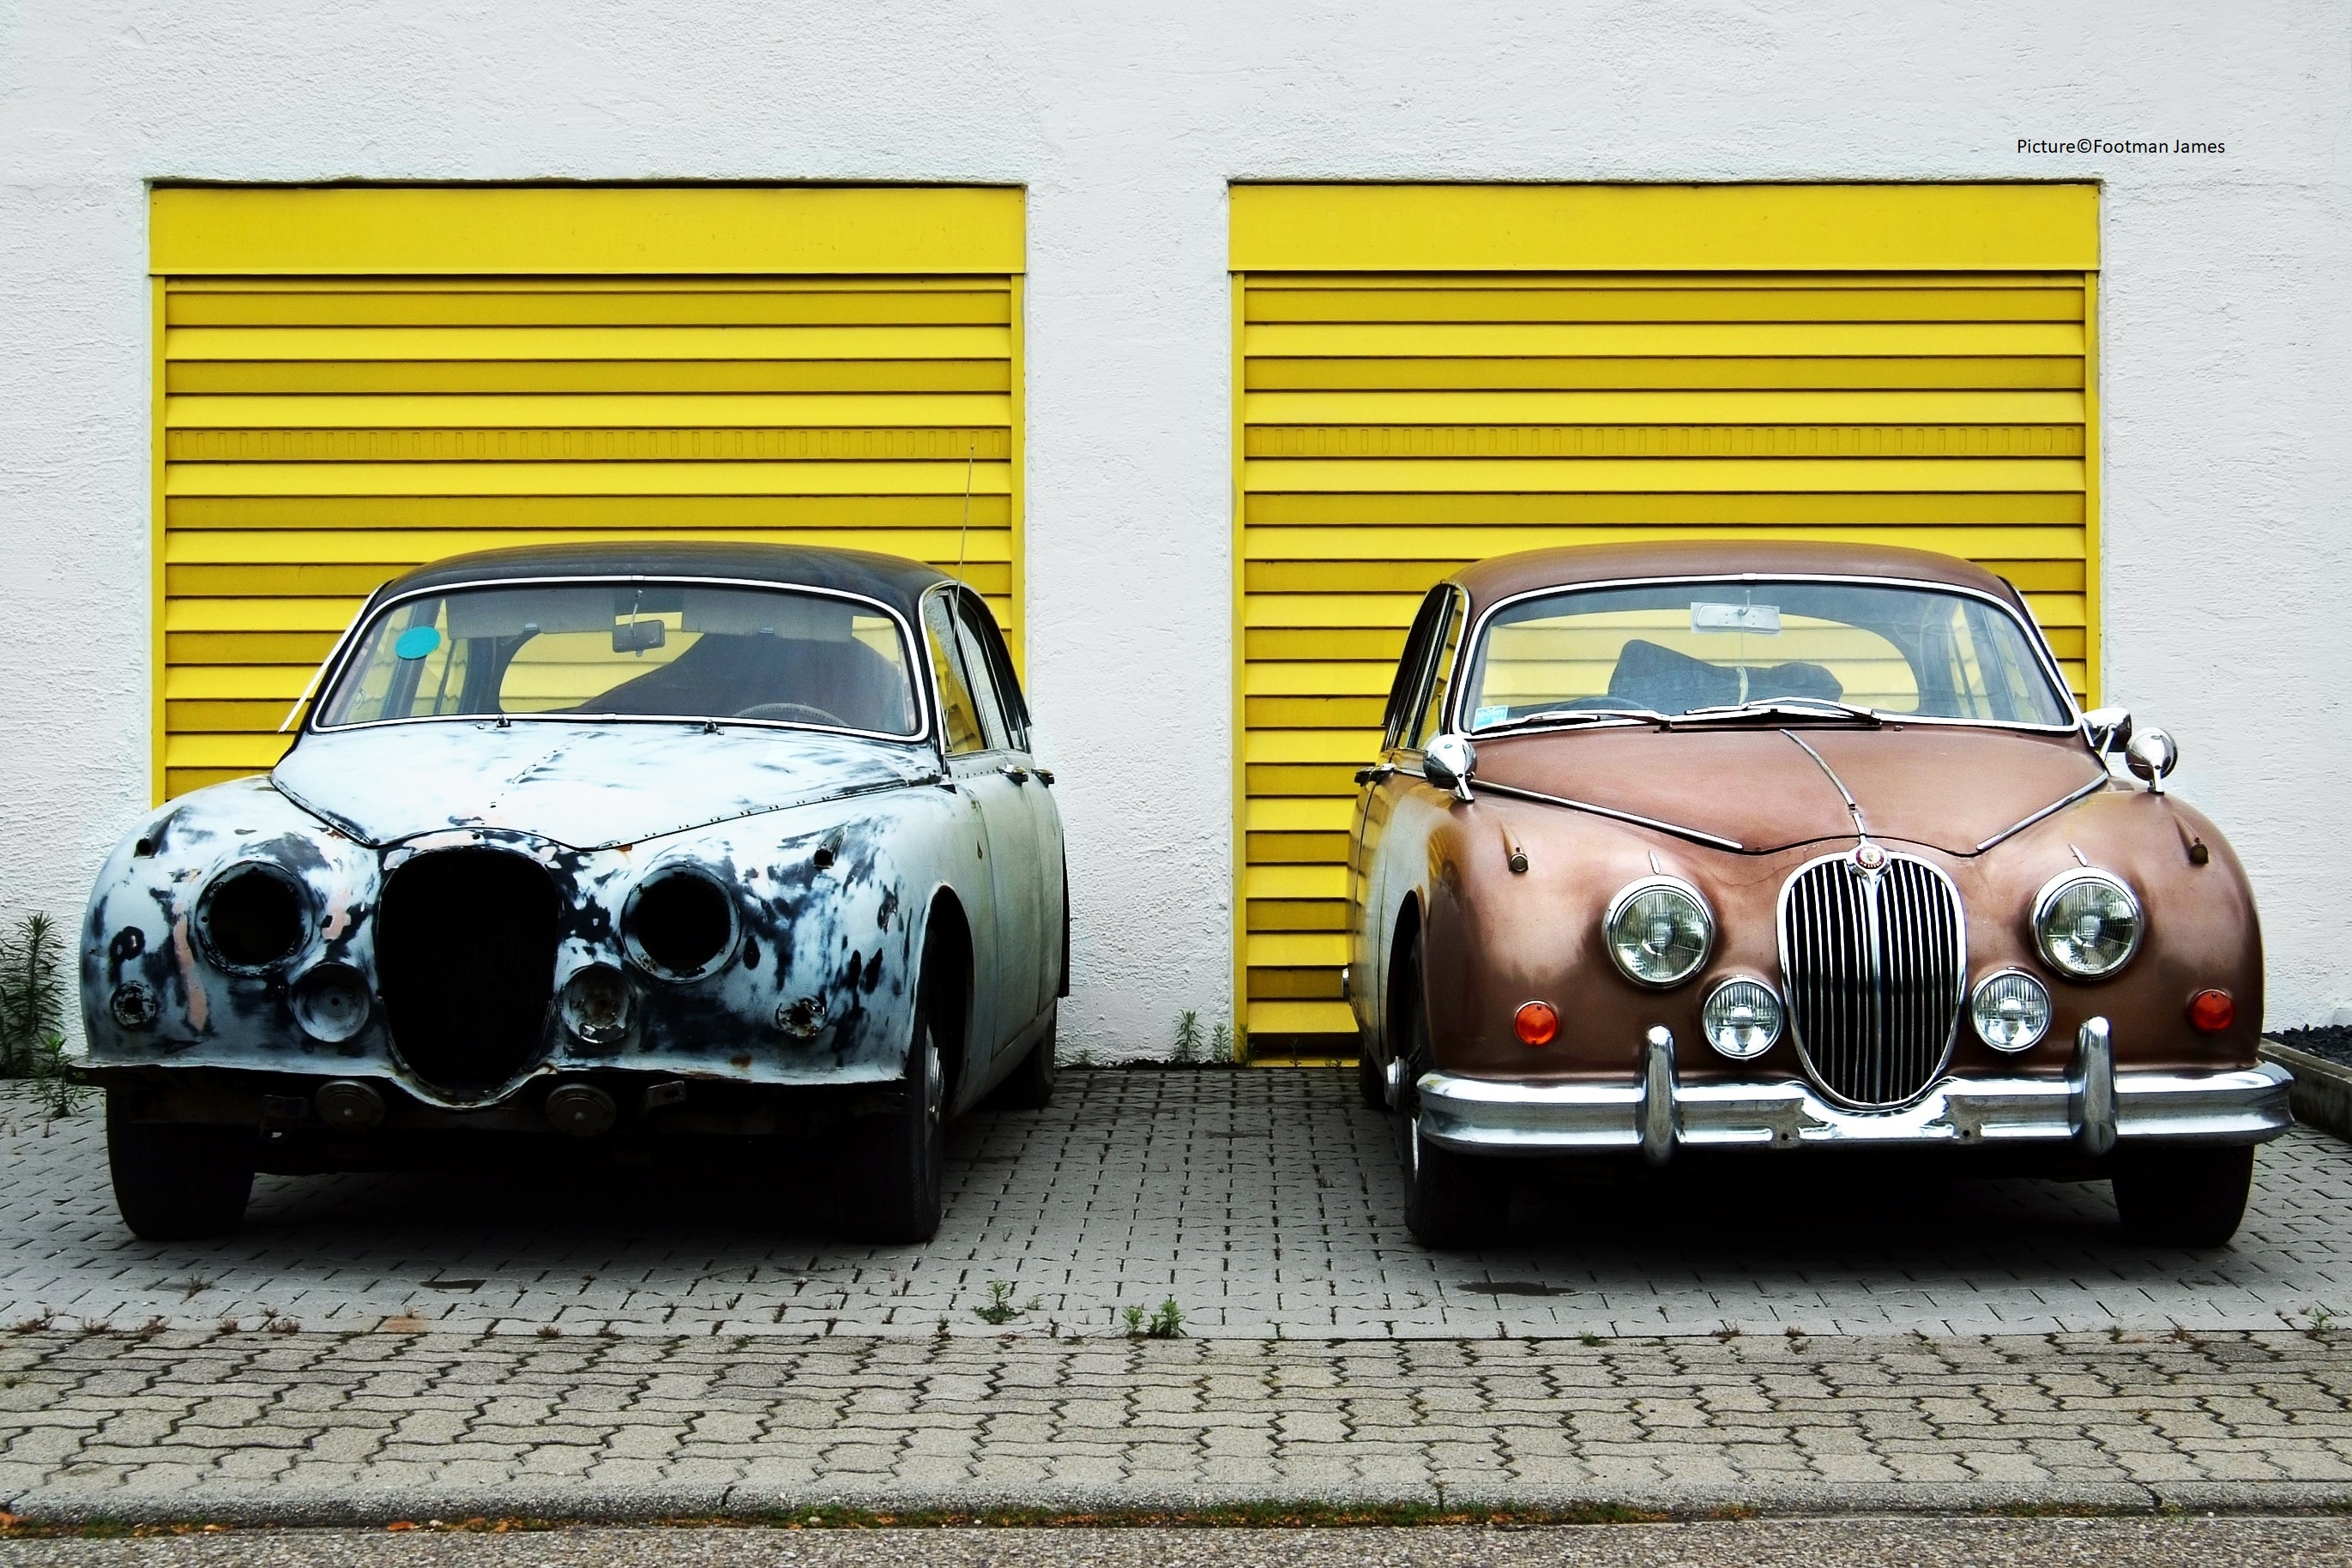 sorn. Image of two classic Jaguar Mk2s